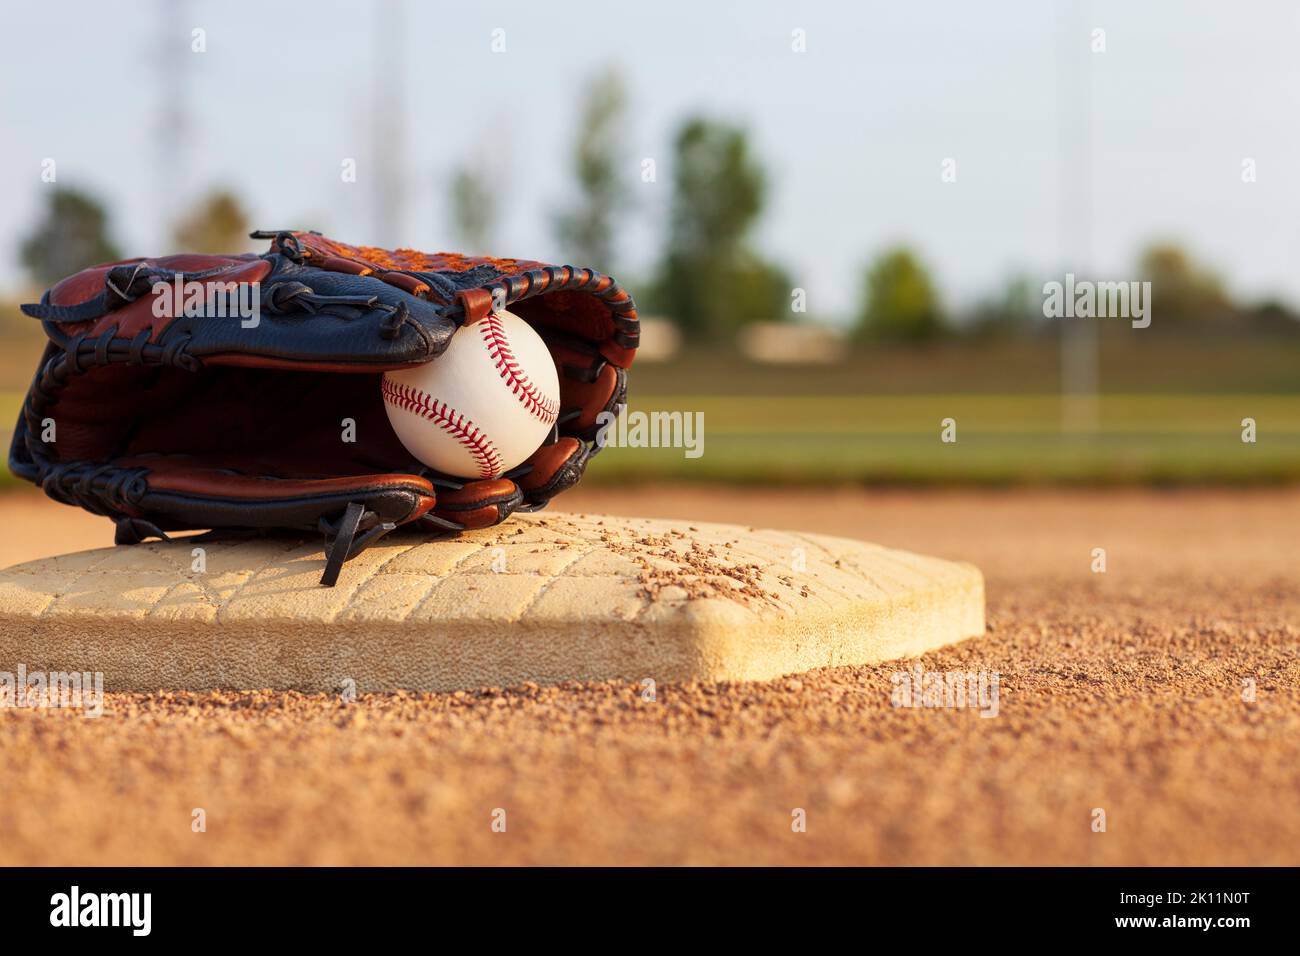 Enfoque selectivo de un béisbol en una manopla de cuero en una base de un campo de béisbol en un día soleado Foto de stock